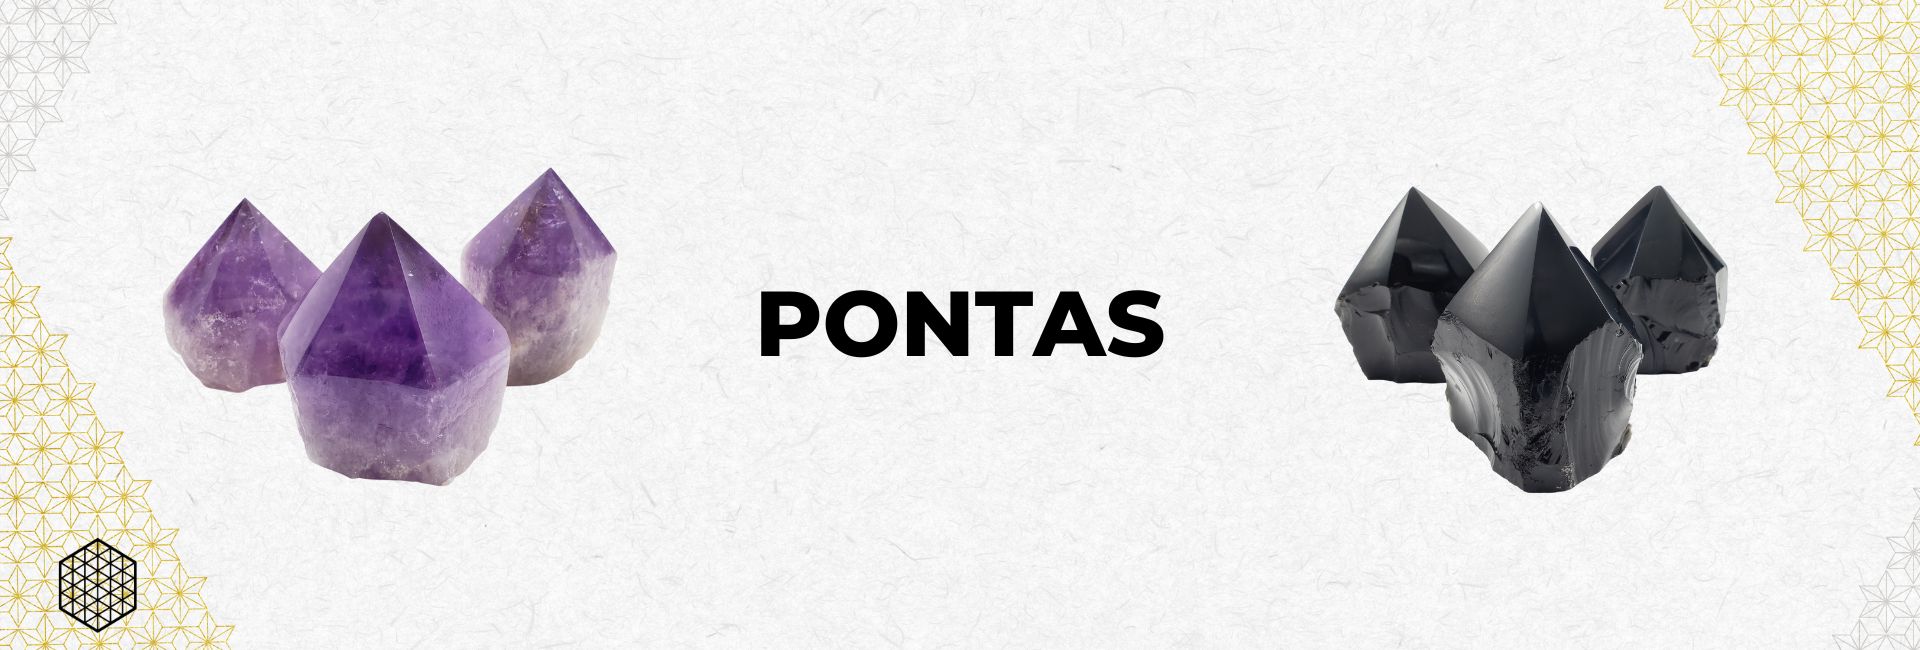 CATEGORIA PONTAS